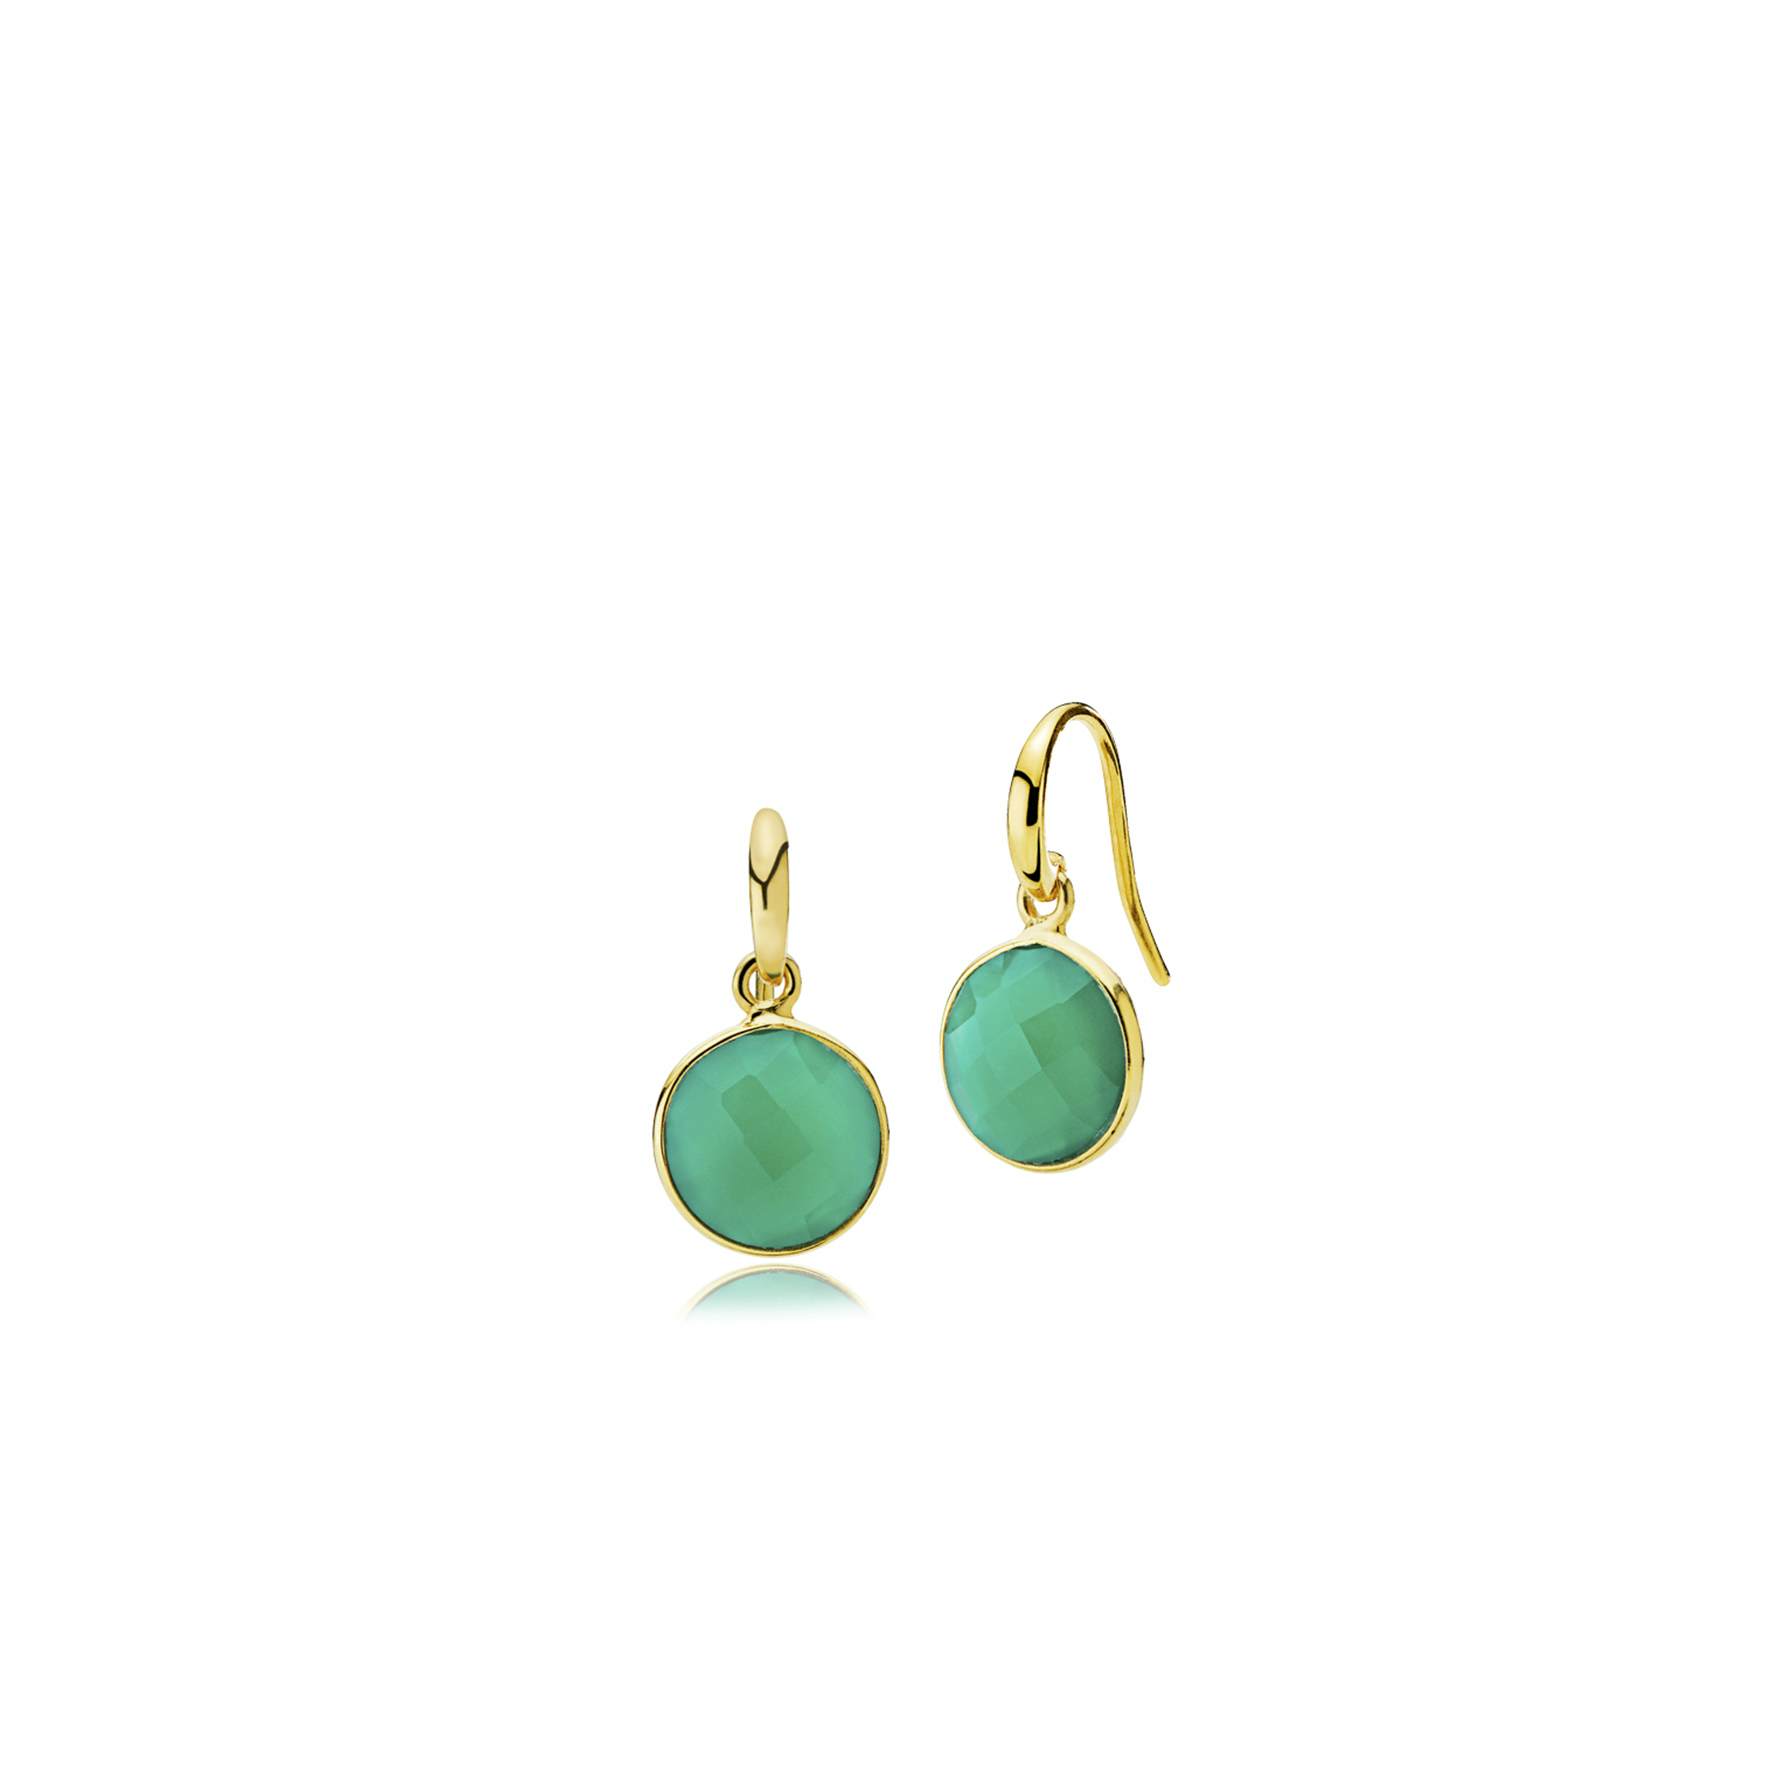 Prima Donna earrings small Green Onyx fra Izabel Camille i Forgyldt-Sølv Sterling 925